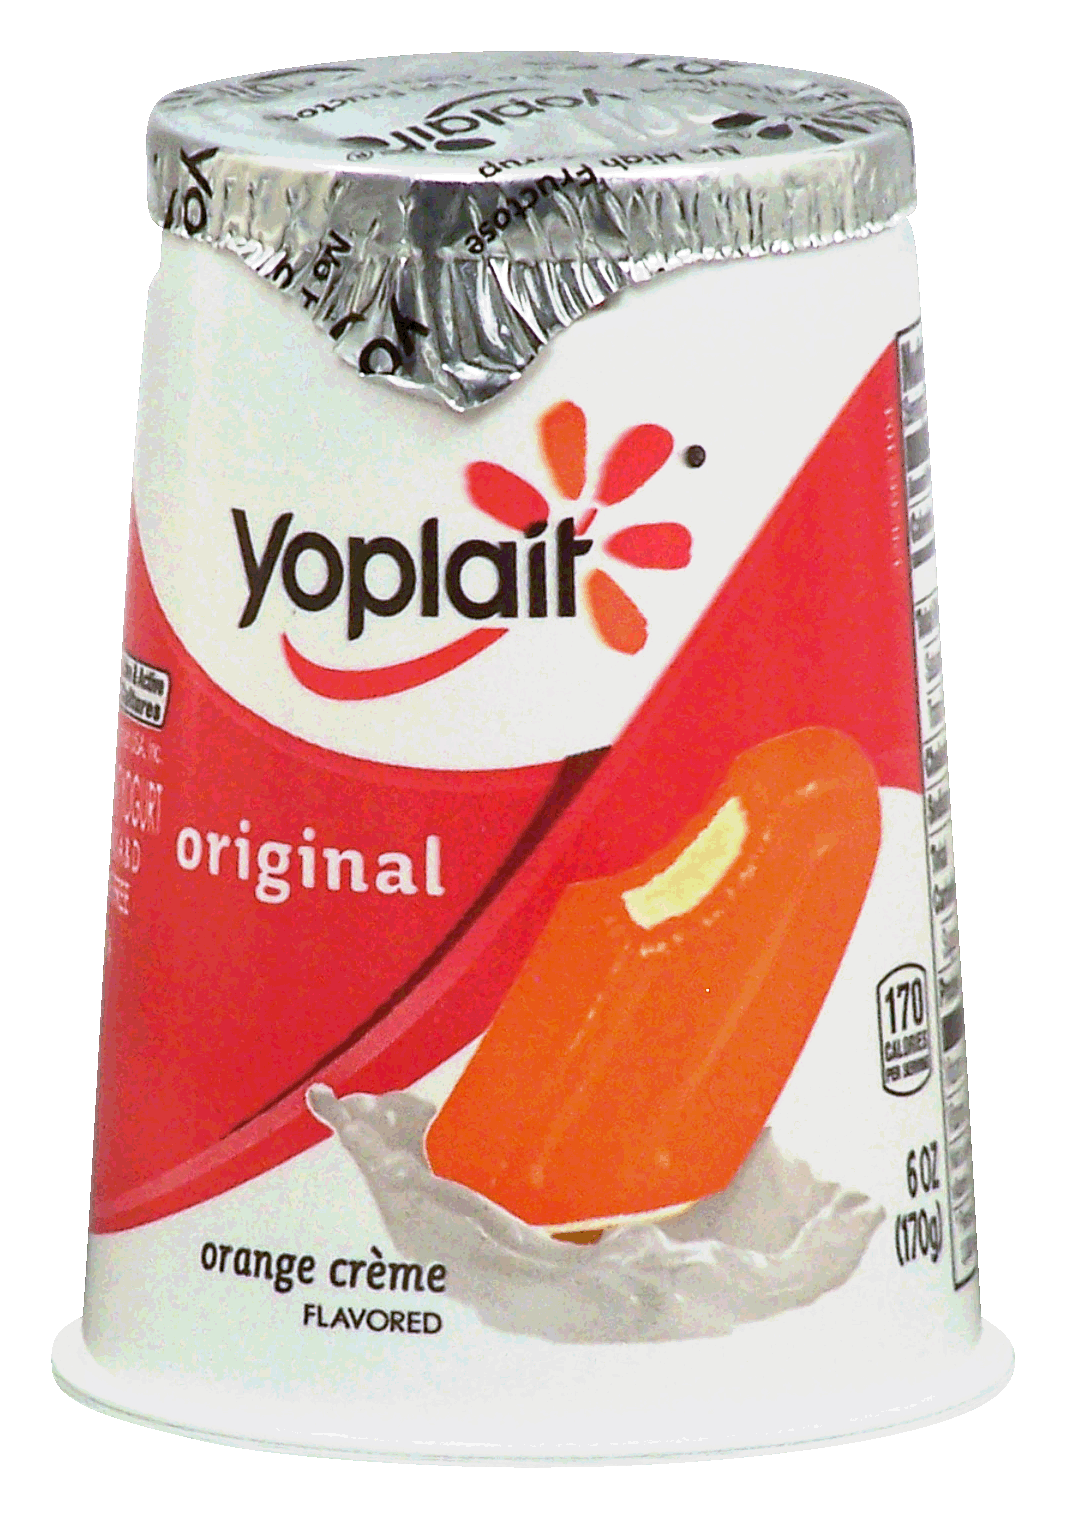 Yoplait Original lowfat orange creme yogurt Full-Size Picture